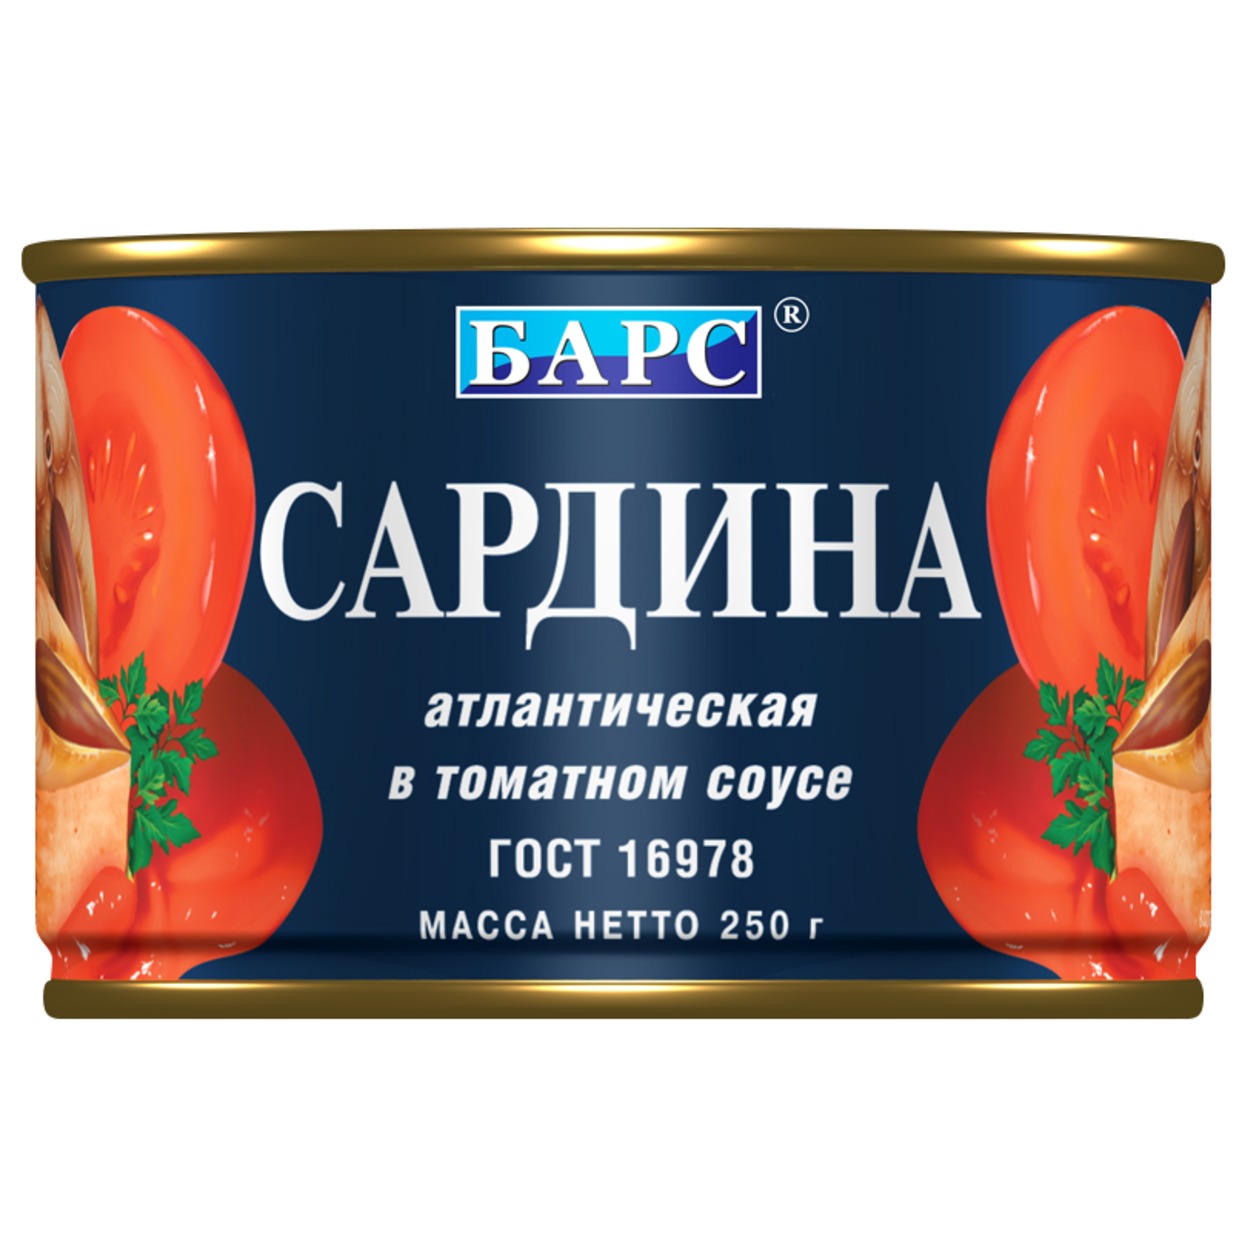 Сардина атлантическая в томатном соусе ГОСТ 250 грамм БАРС